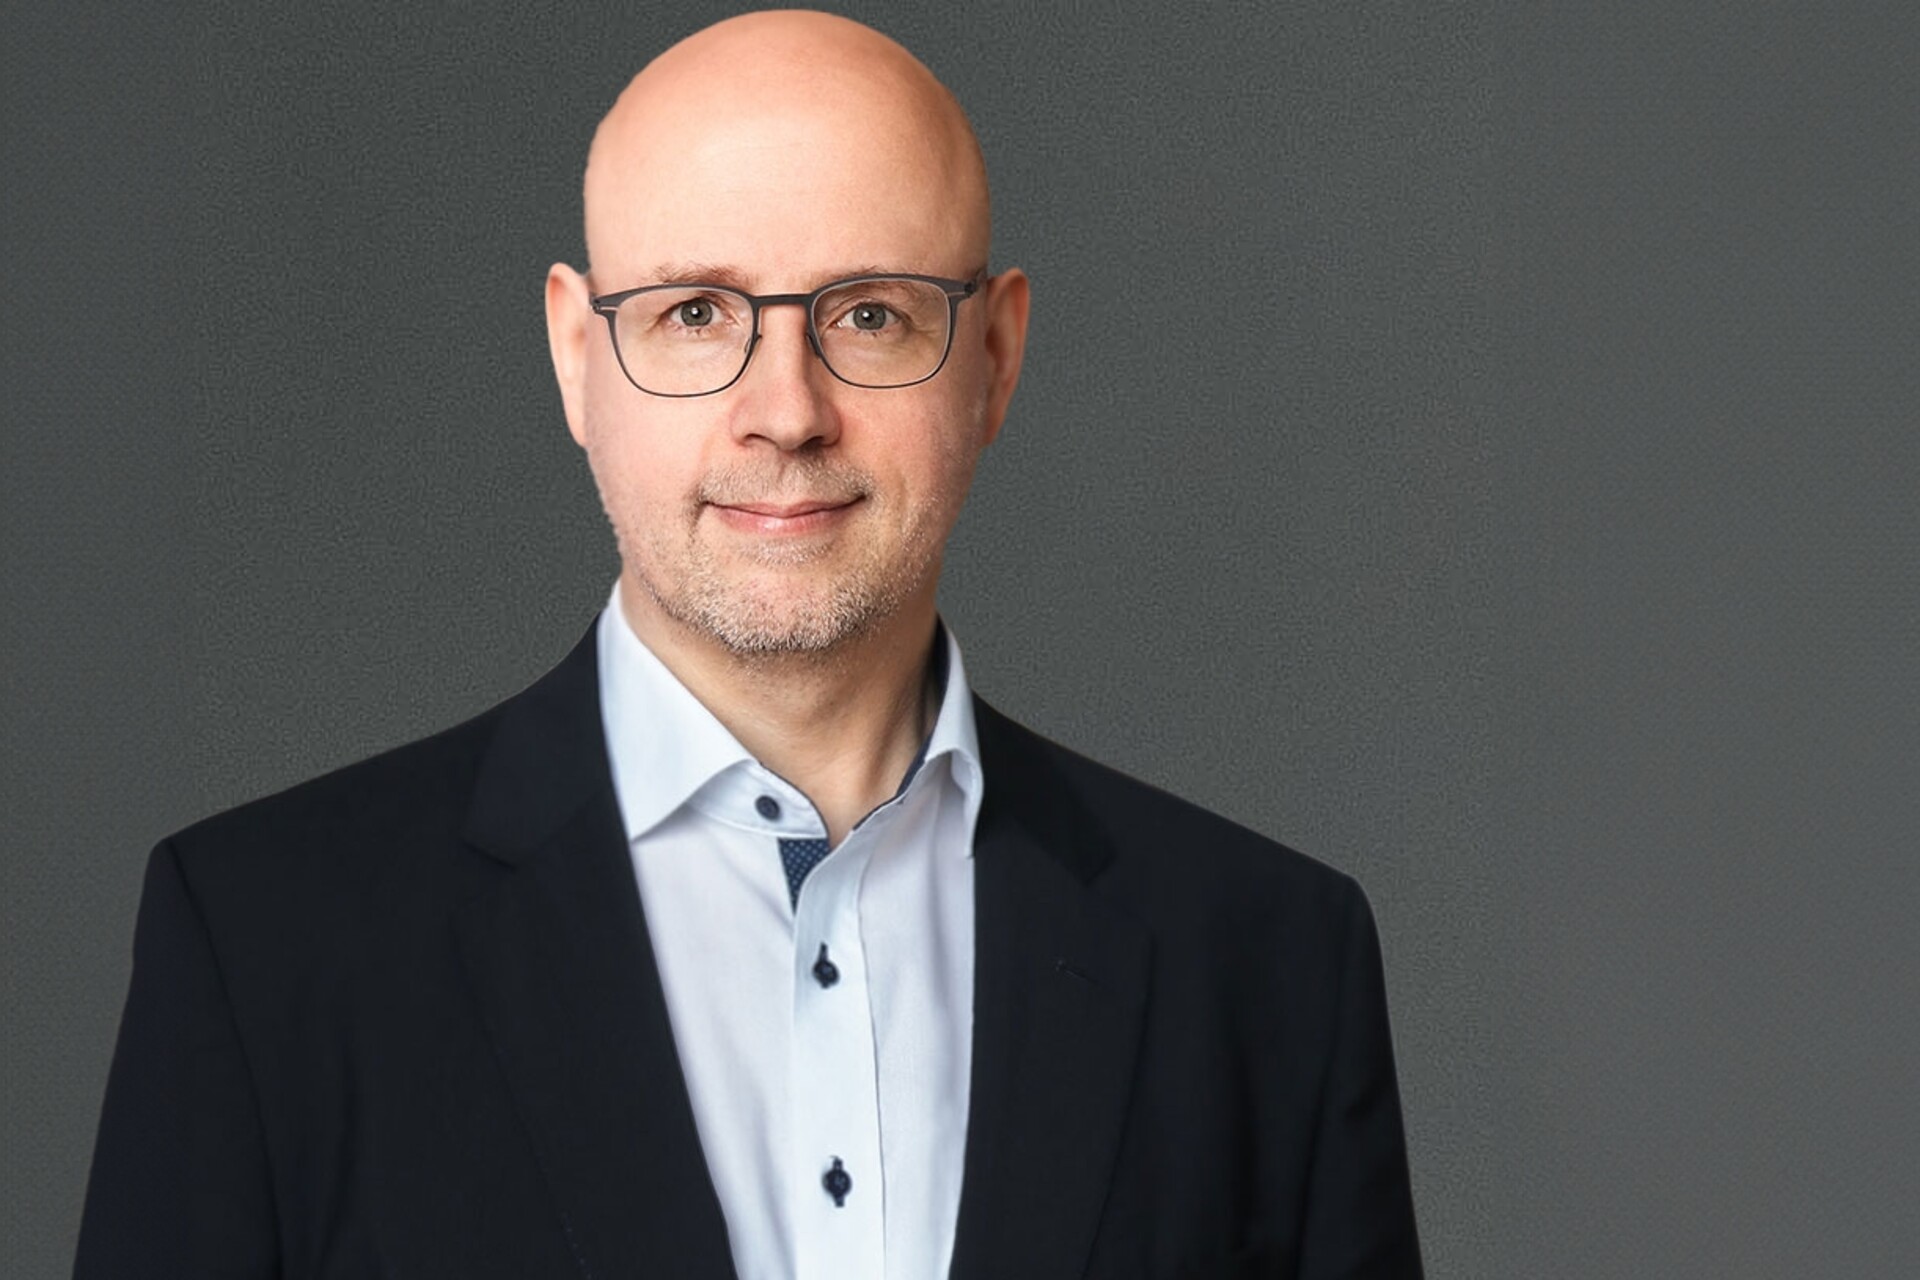 IA: Gerd Niehage és el director tècnic (CTO) de Swisscom